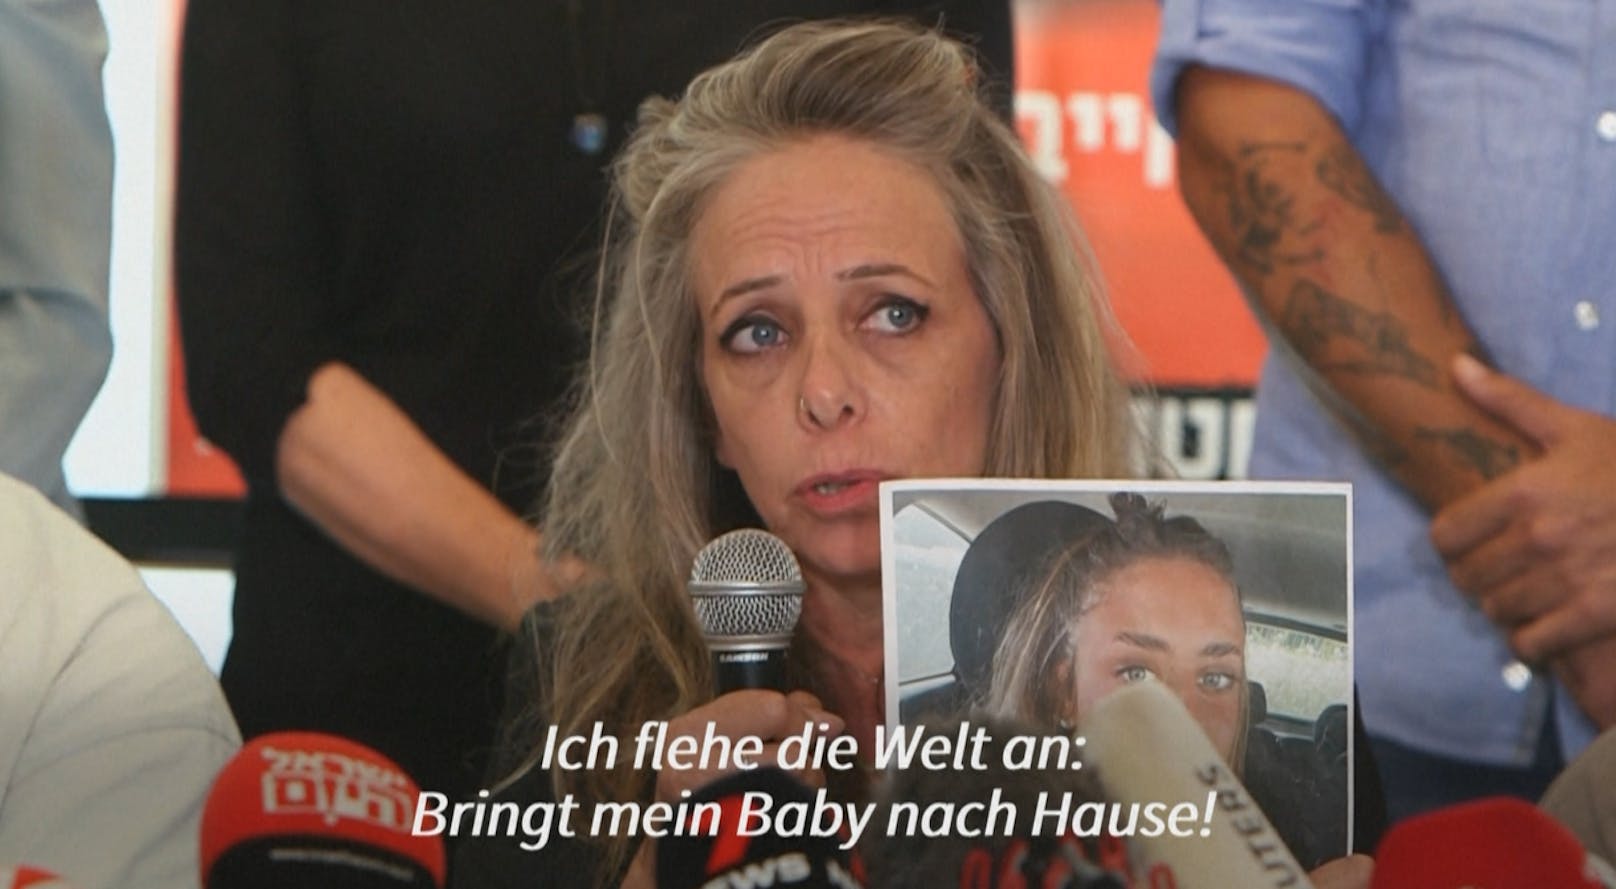 Mutter von Hamas-Geisel Mia: "Bringt mein Baby heim!"